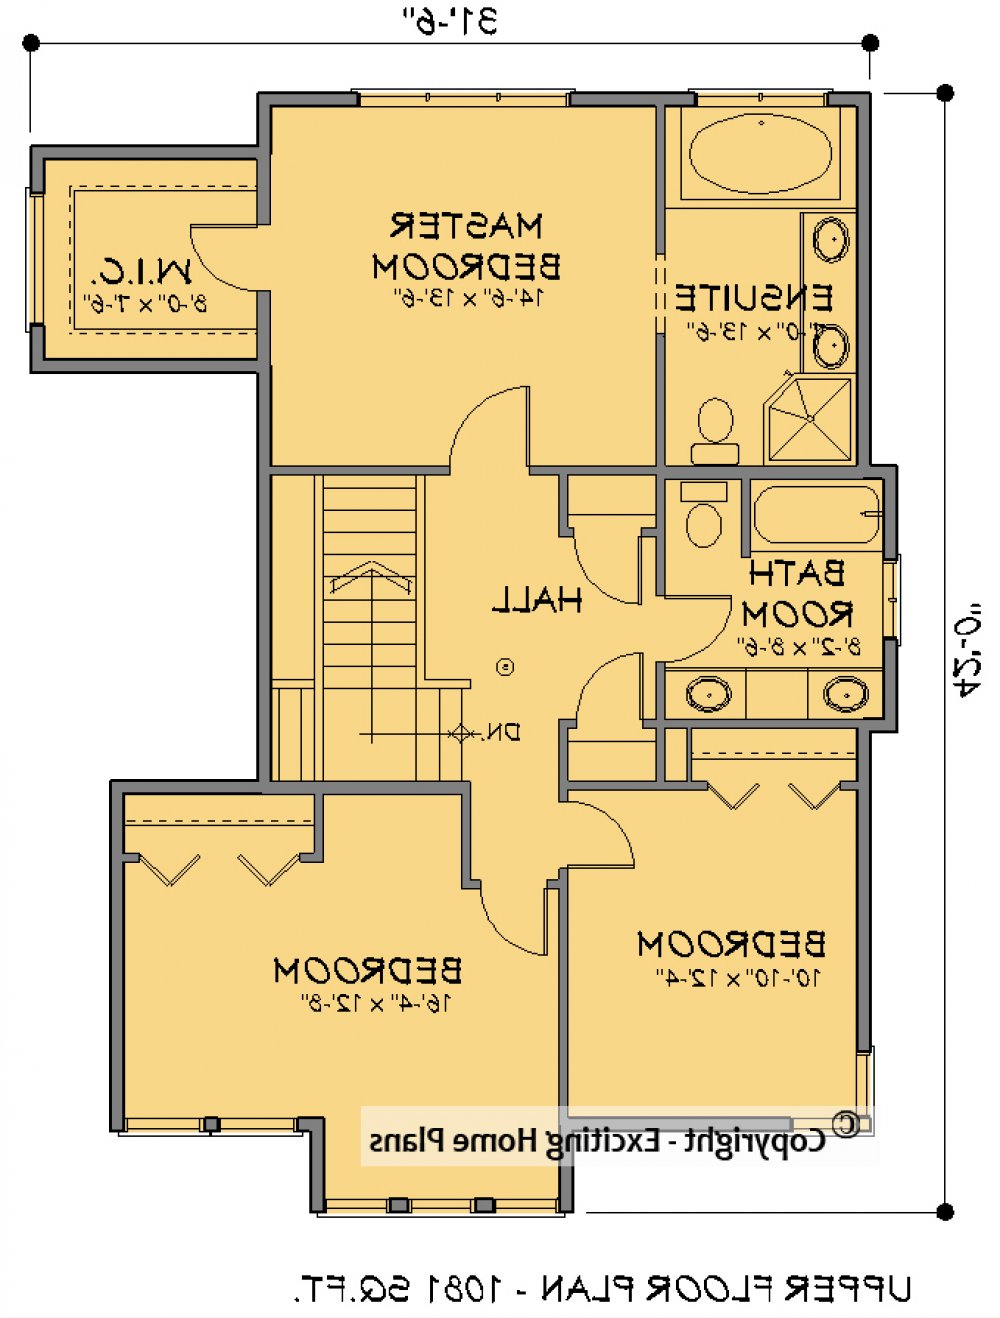 House Plan E1619-10 Upper Floor Plan REVERSE